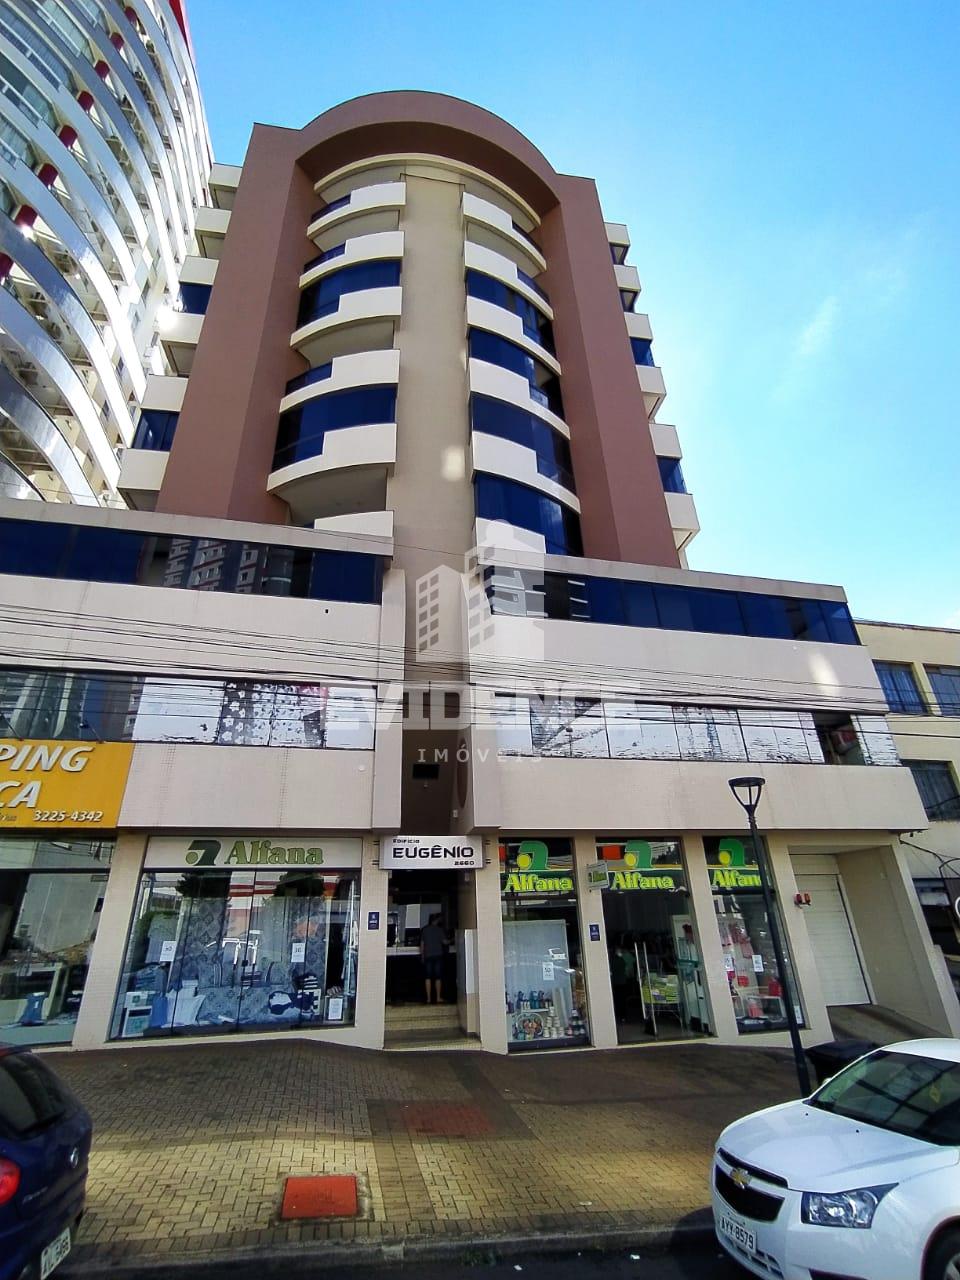 Apartamento com 3 dormitórios à venda,162.00m², CENTRO, PATO BRANCO - PR